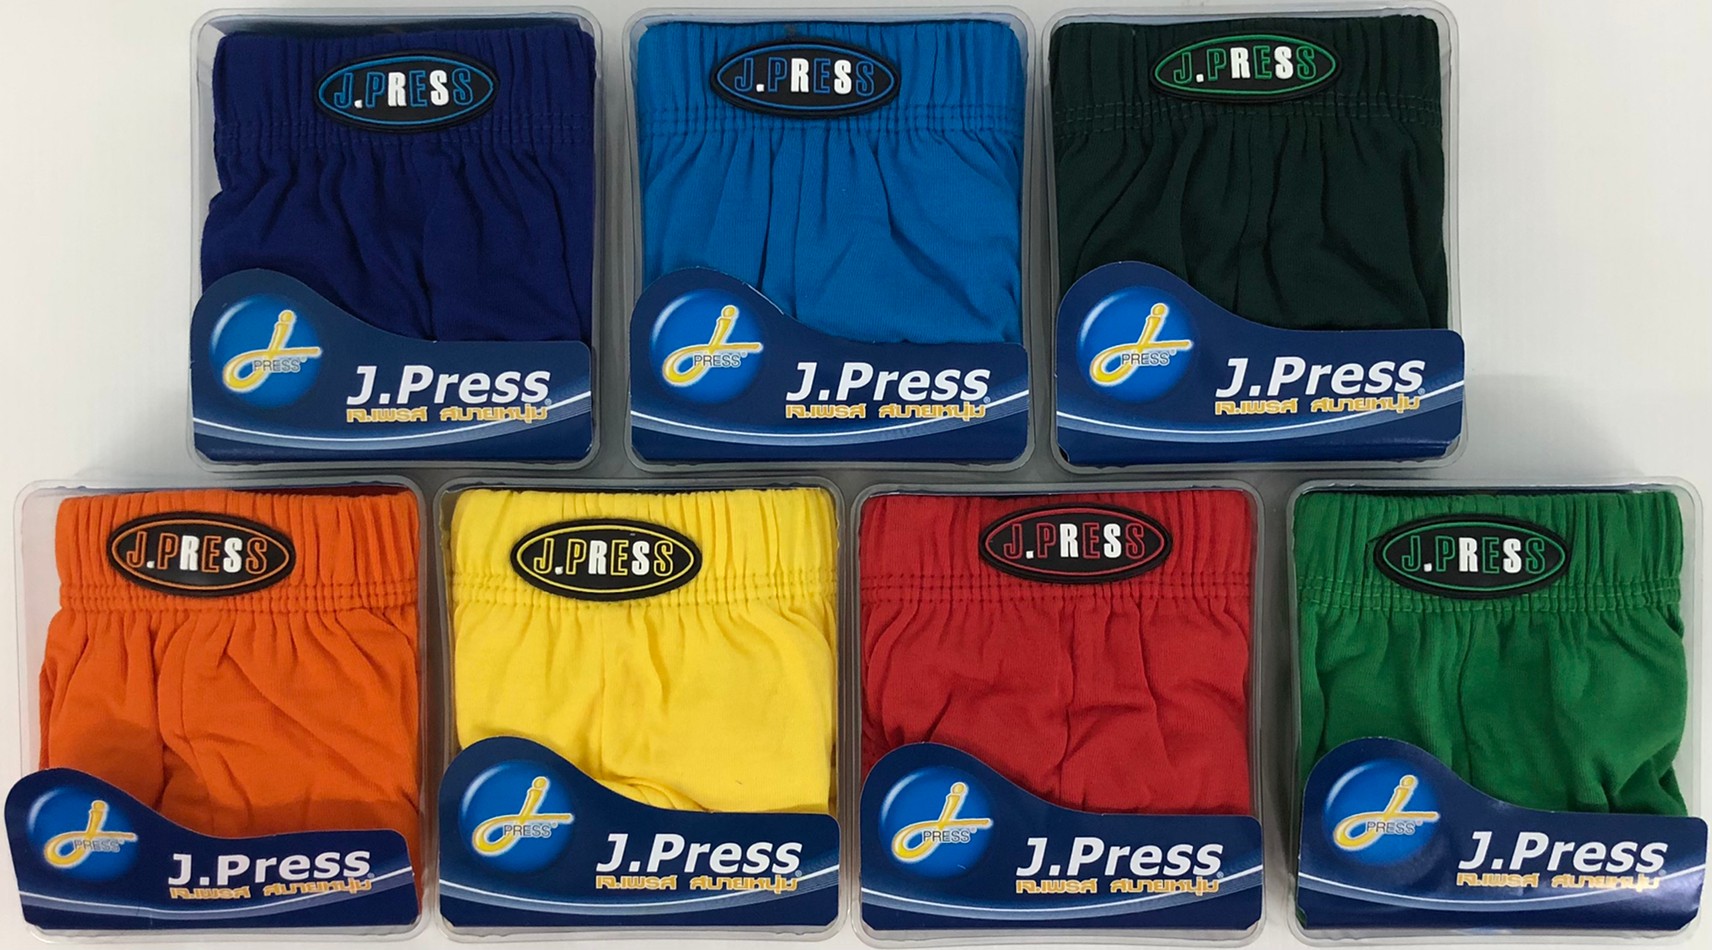 กางเกงในชาย J.Press ขอบผ้า (3 ตัว) รุ่นยอดนิยม 12 สีให้เลือก J Press เจเพรส รุ่น 1444 กางเกงใน ชาย